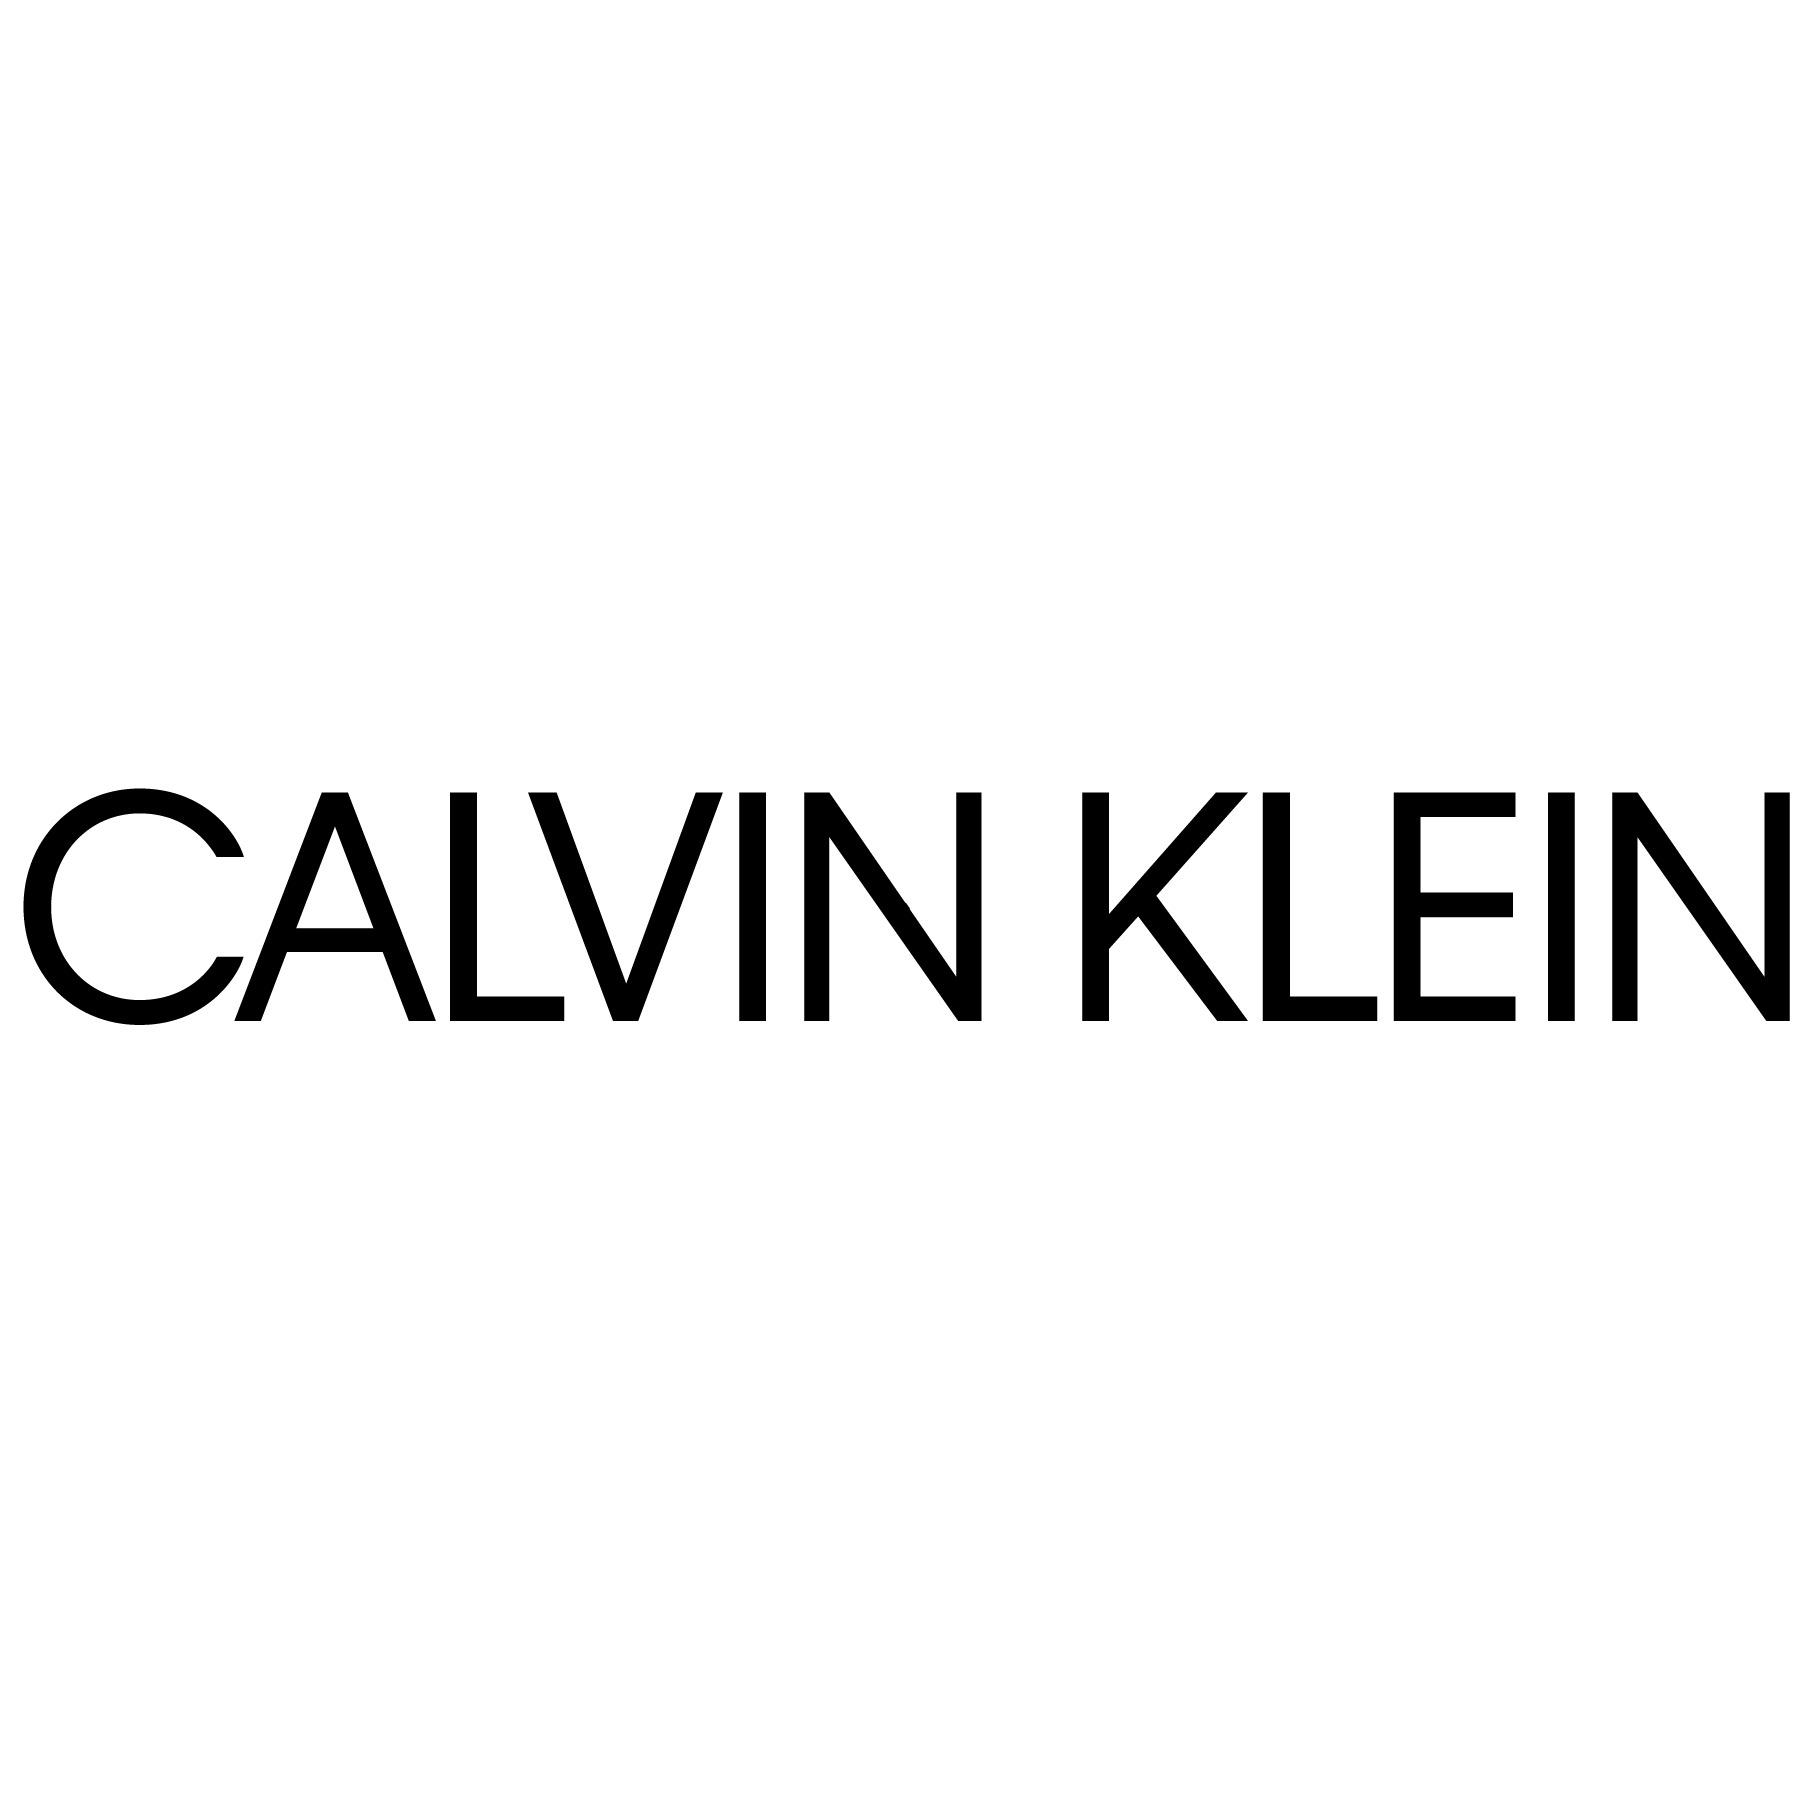 Calvin Klein Underwear Logo